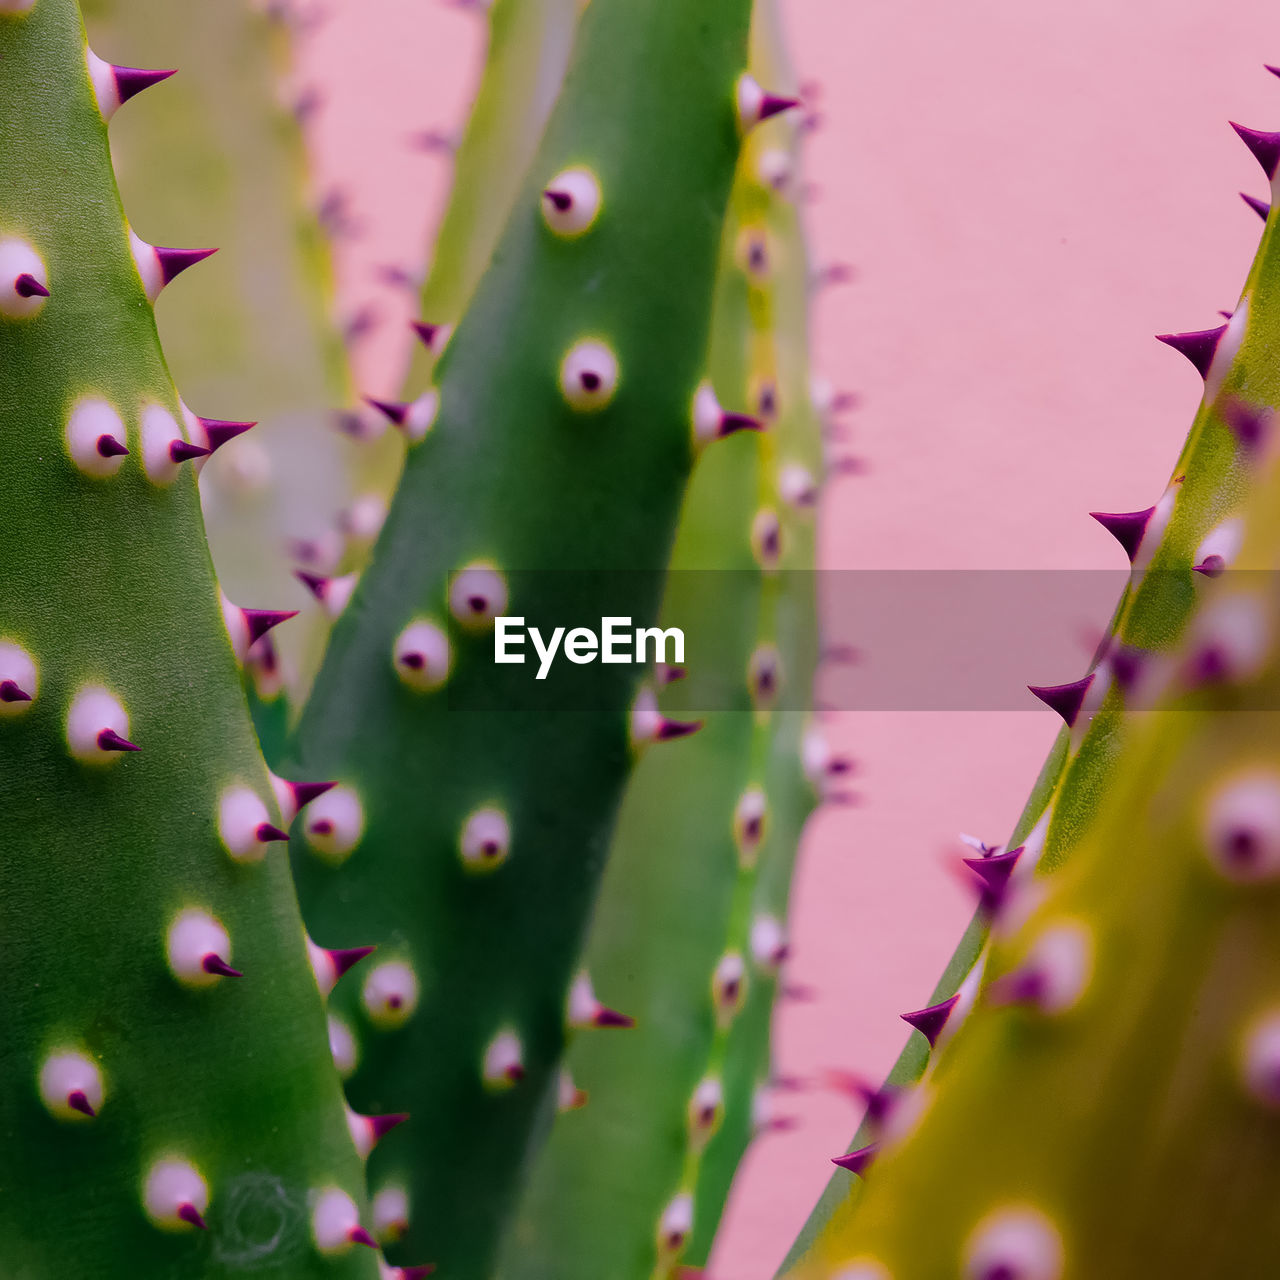 Plant close-up texture. cactus. plants lover concept. colors design